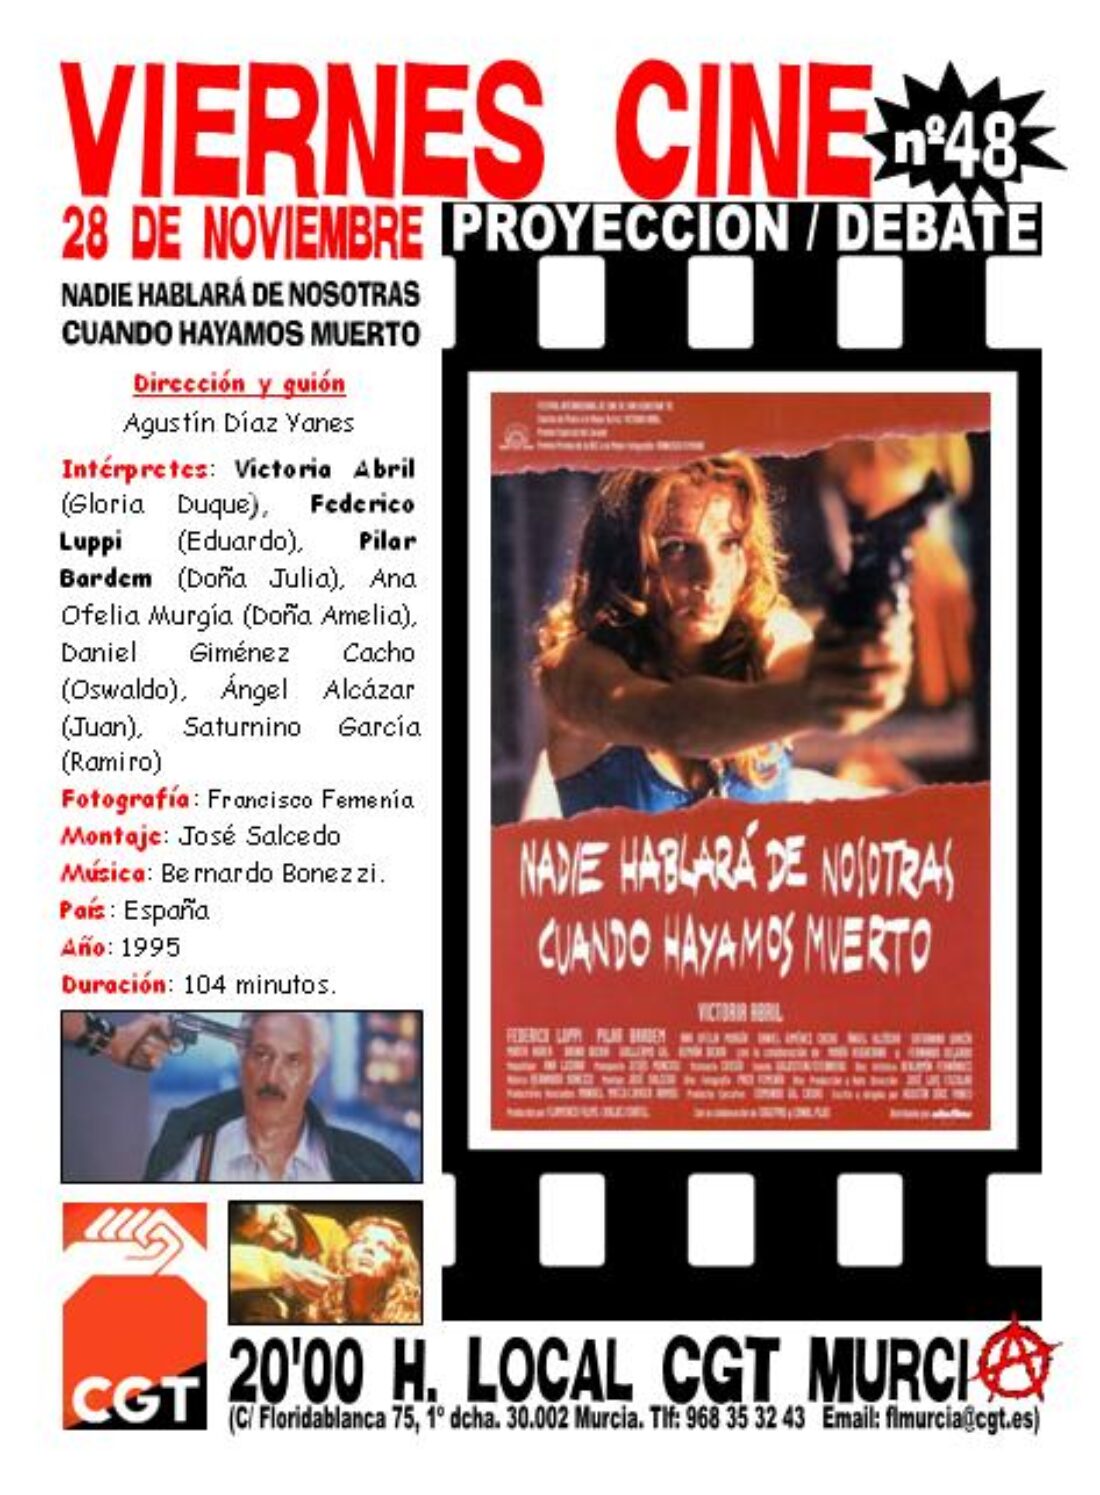 VIERNES CINE el próximo 28 de noviembre NADIE HABLARA DE NOSOTRAS CUANDO HAYAMOS MUERTO a las 20’00 h. en el local de CGT Murcia